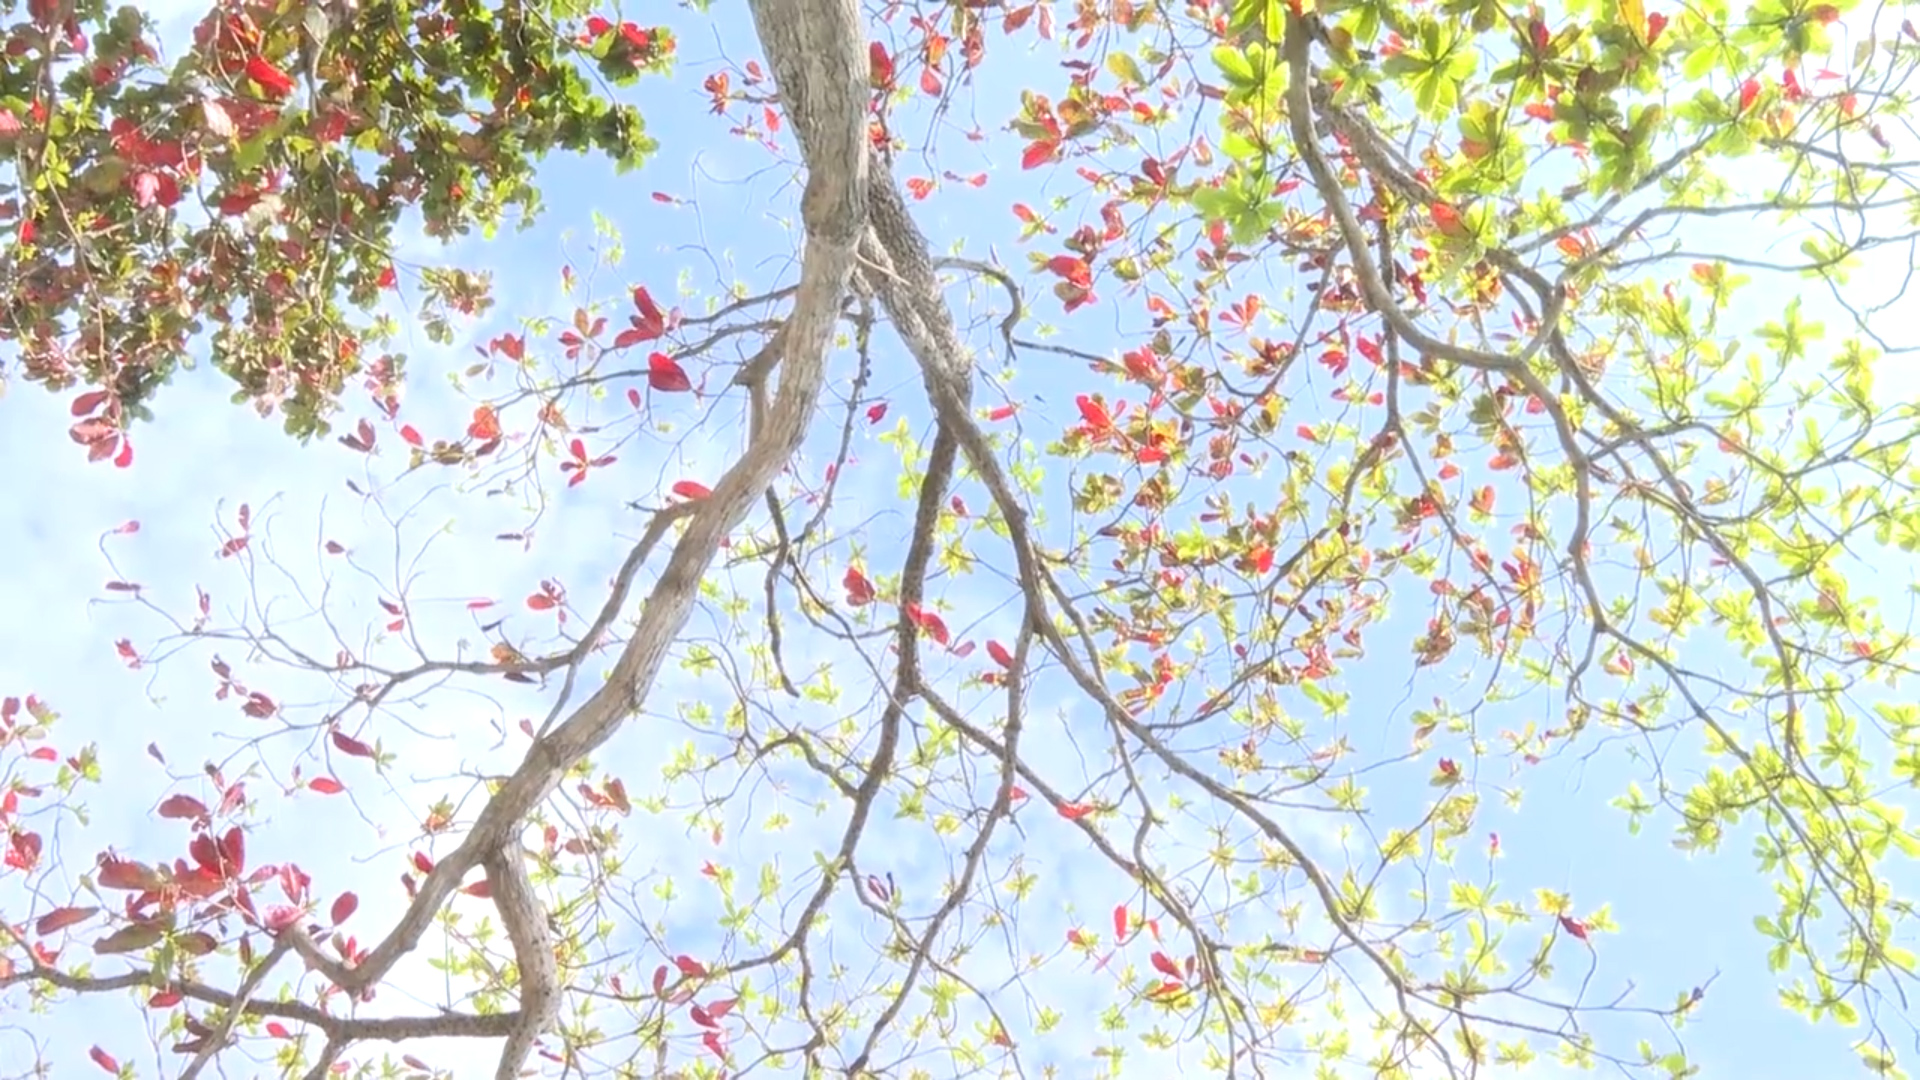 Côn Đảo: Đẹp thơ mộng, ngỡ ngàng mùa Bàng thay lá